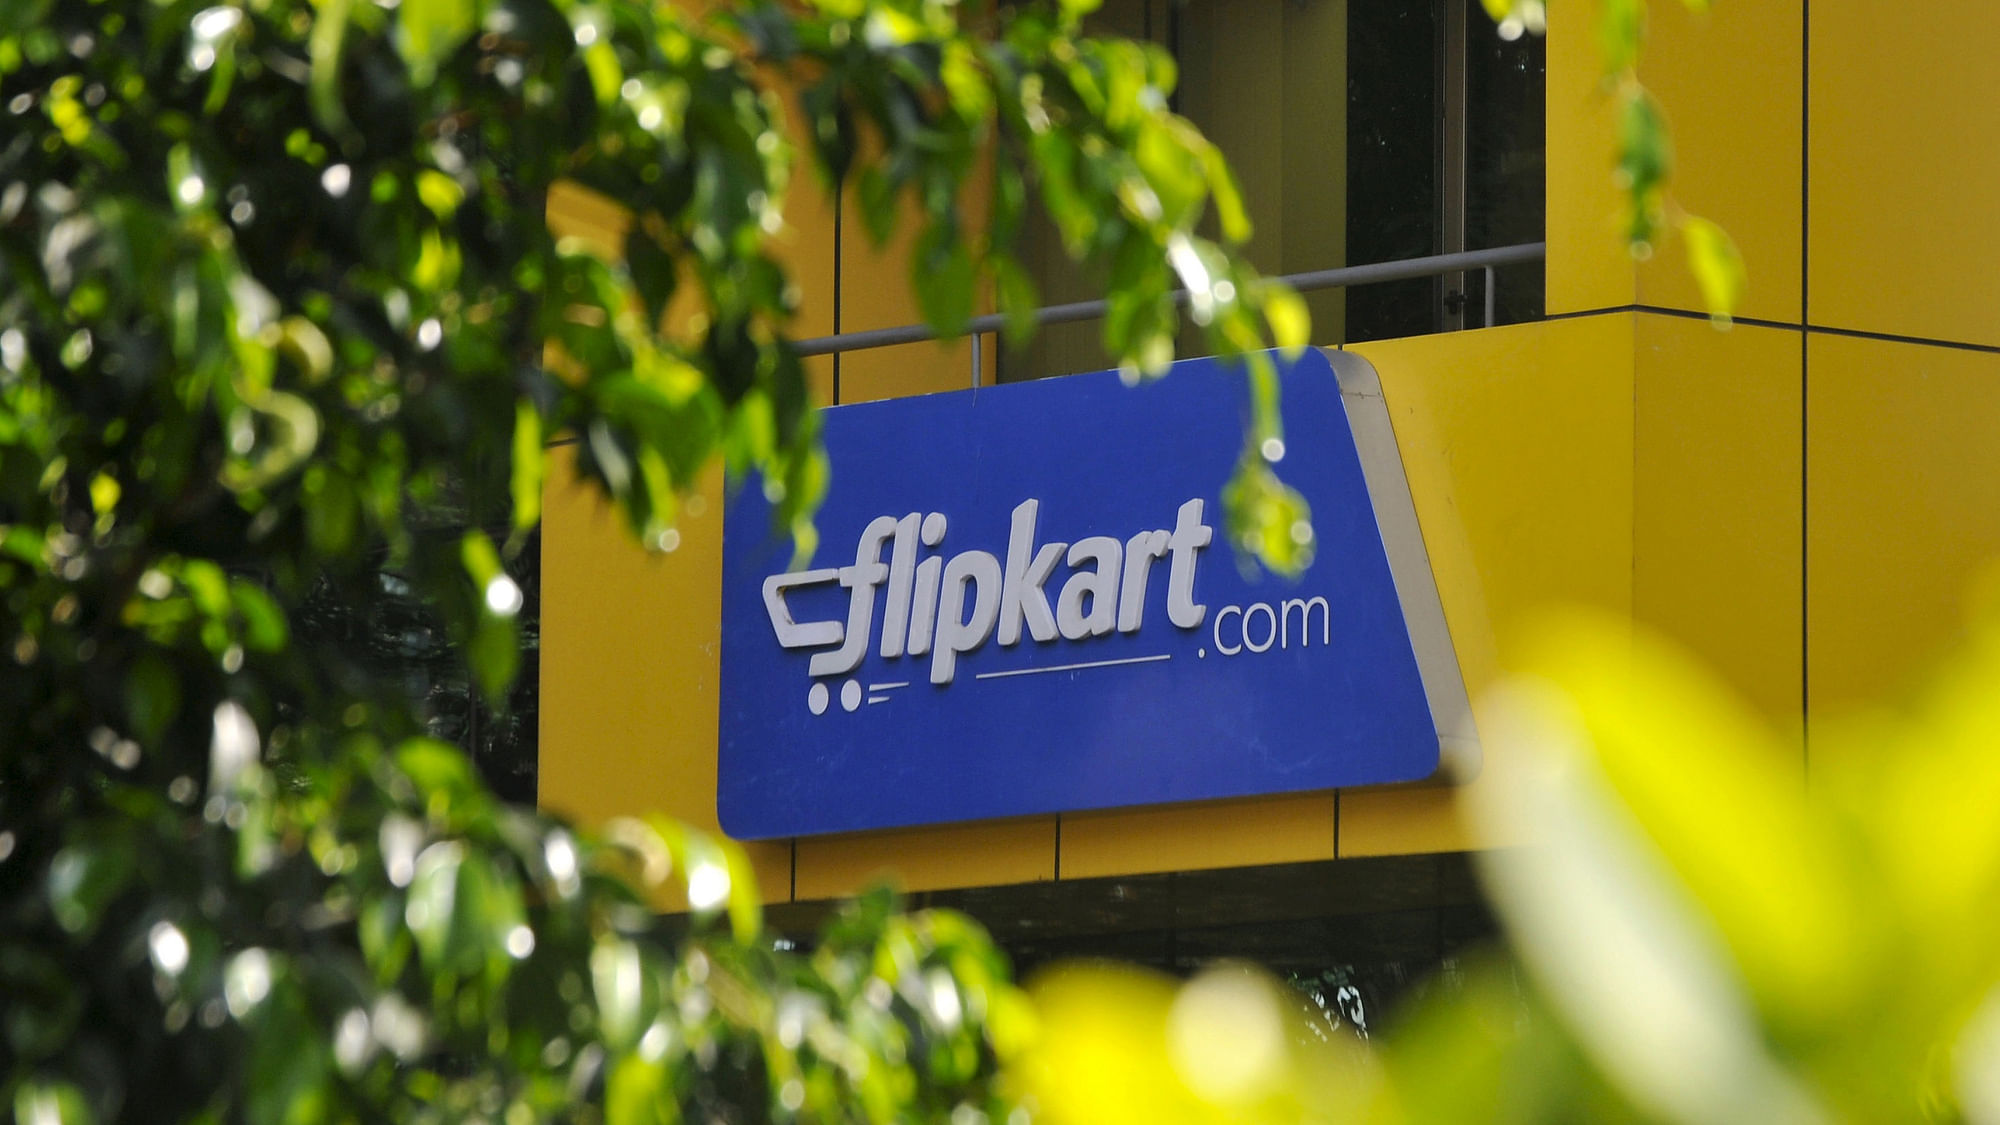 The logo of India’s largest online marketplace Flipkart.